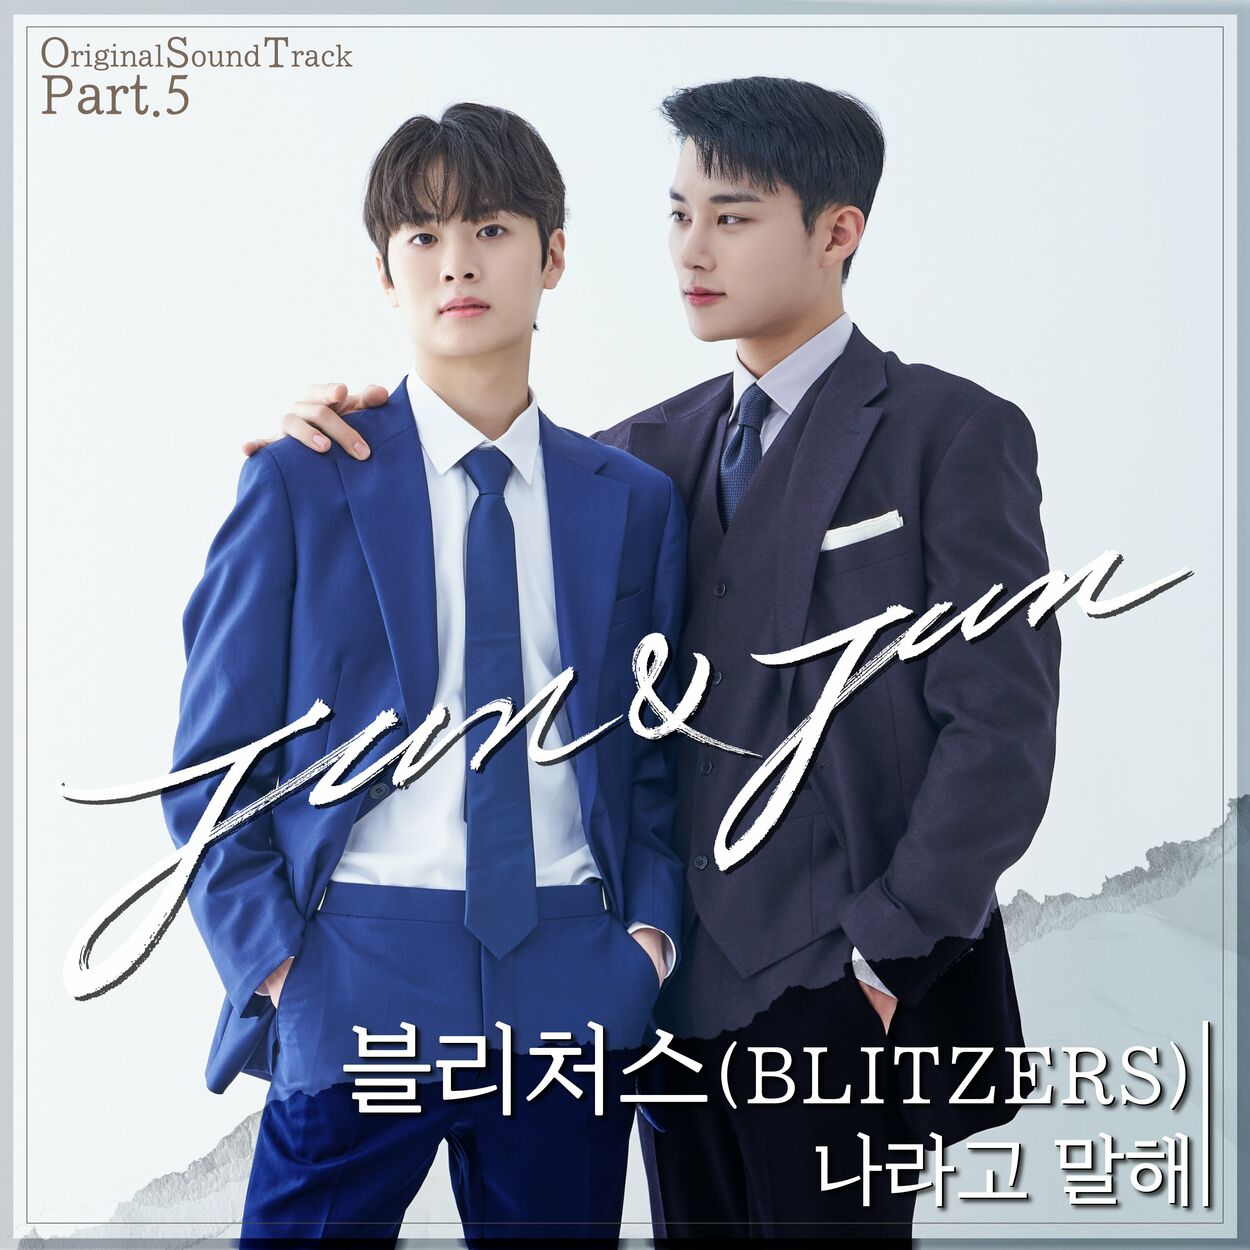 BLITZERS – Jun & Jun Pt. 5 OST